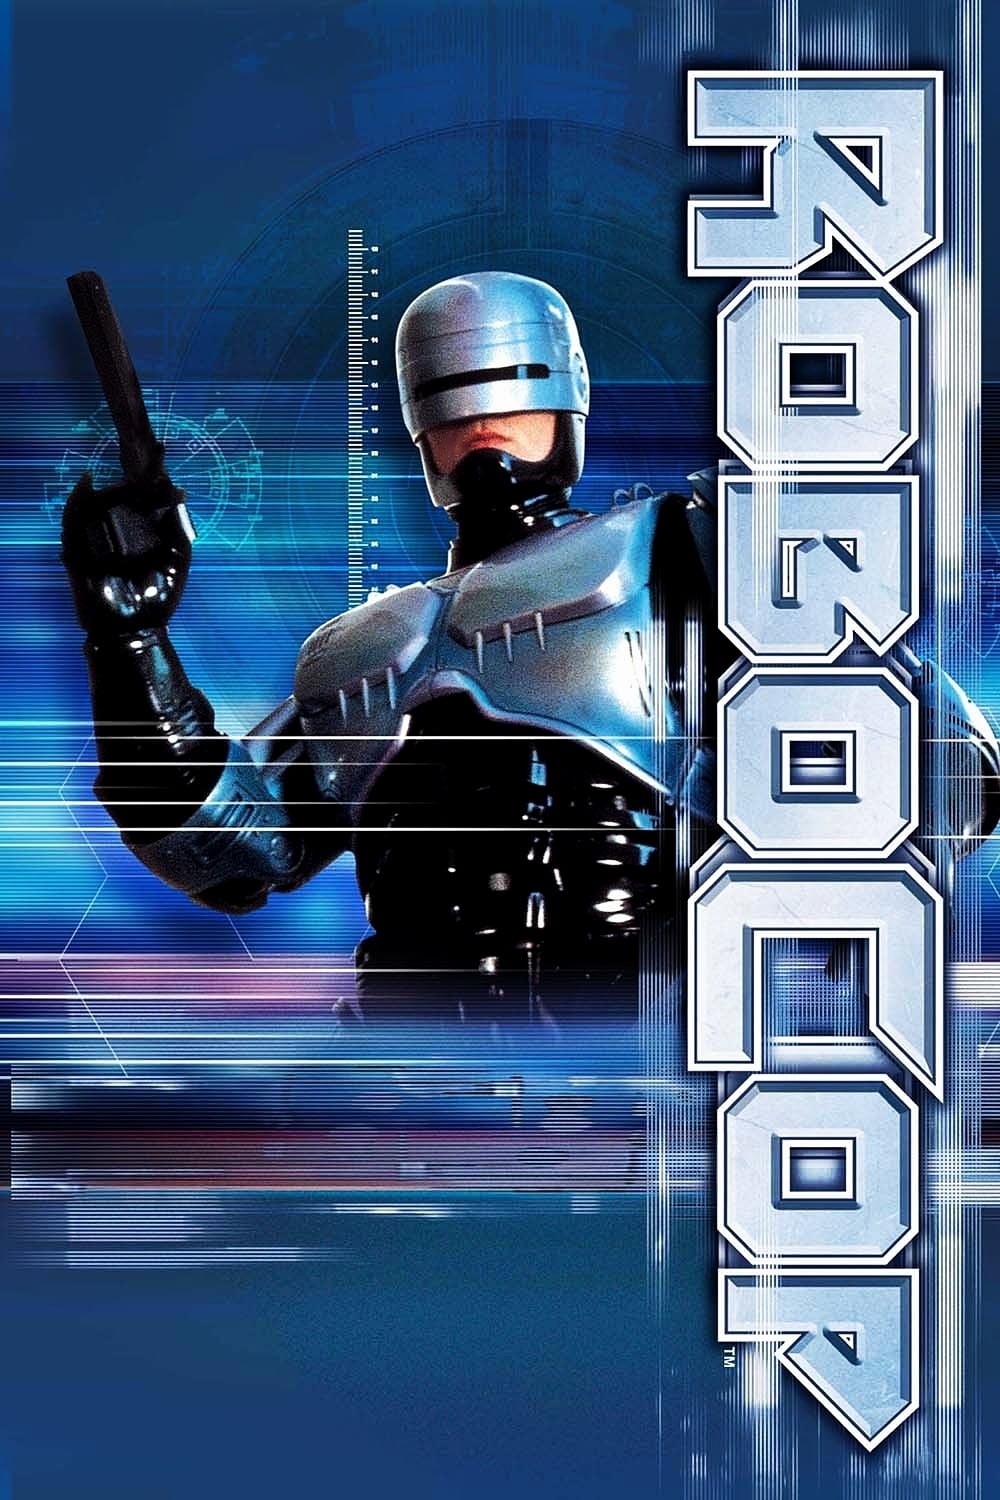 RoboCop: The Series (1994)